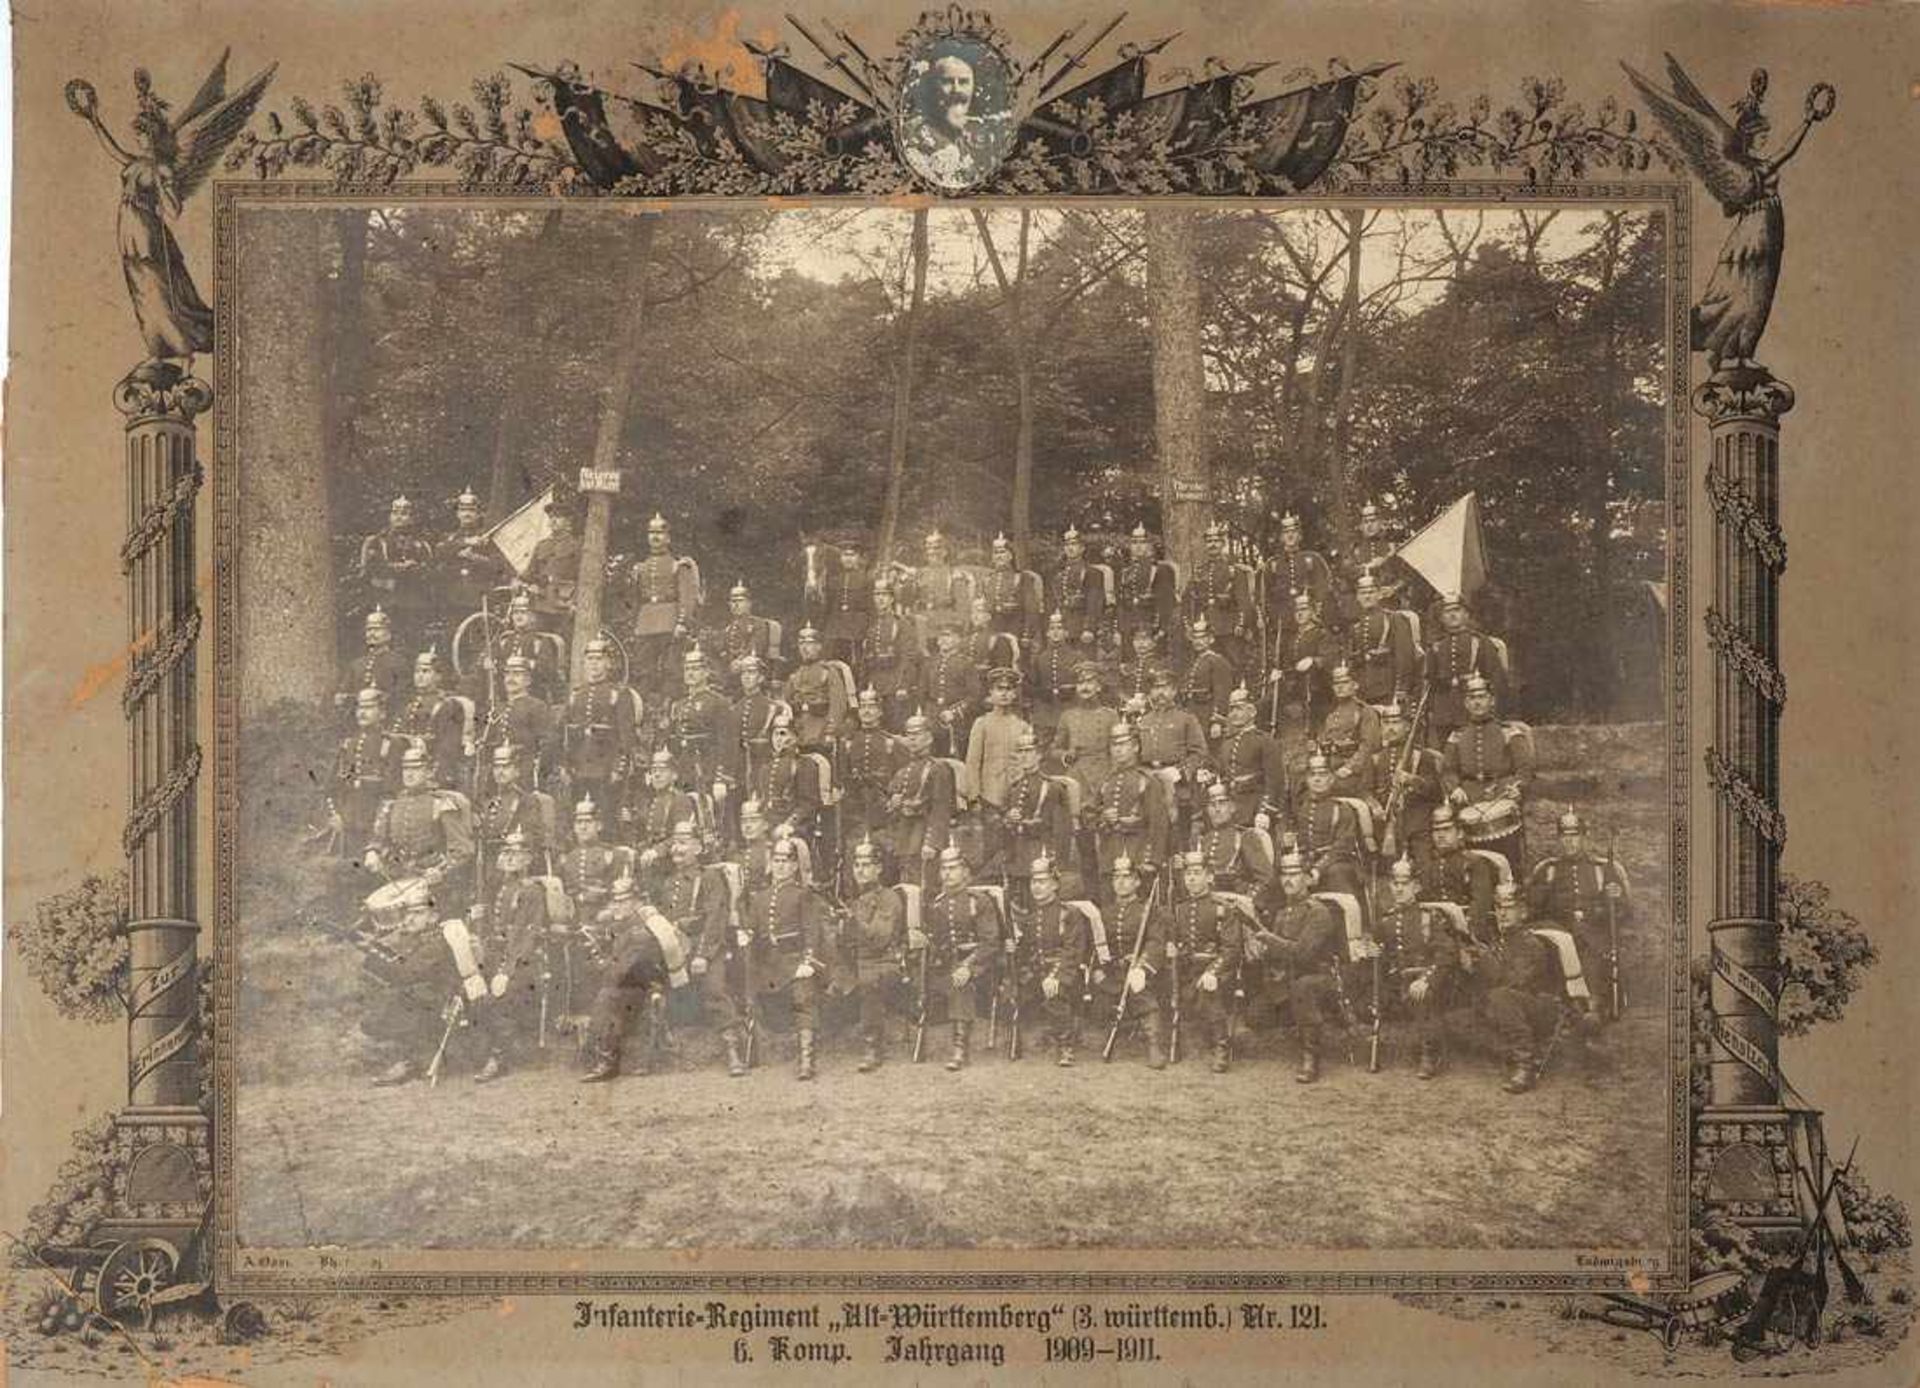 Fotografie des Infanterieregiments 121, 6. KompanieEine Ecke altrest. 47x64cm.